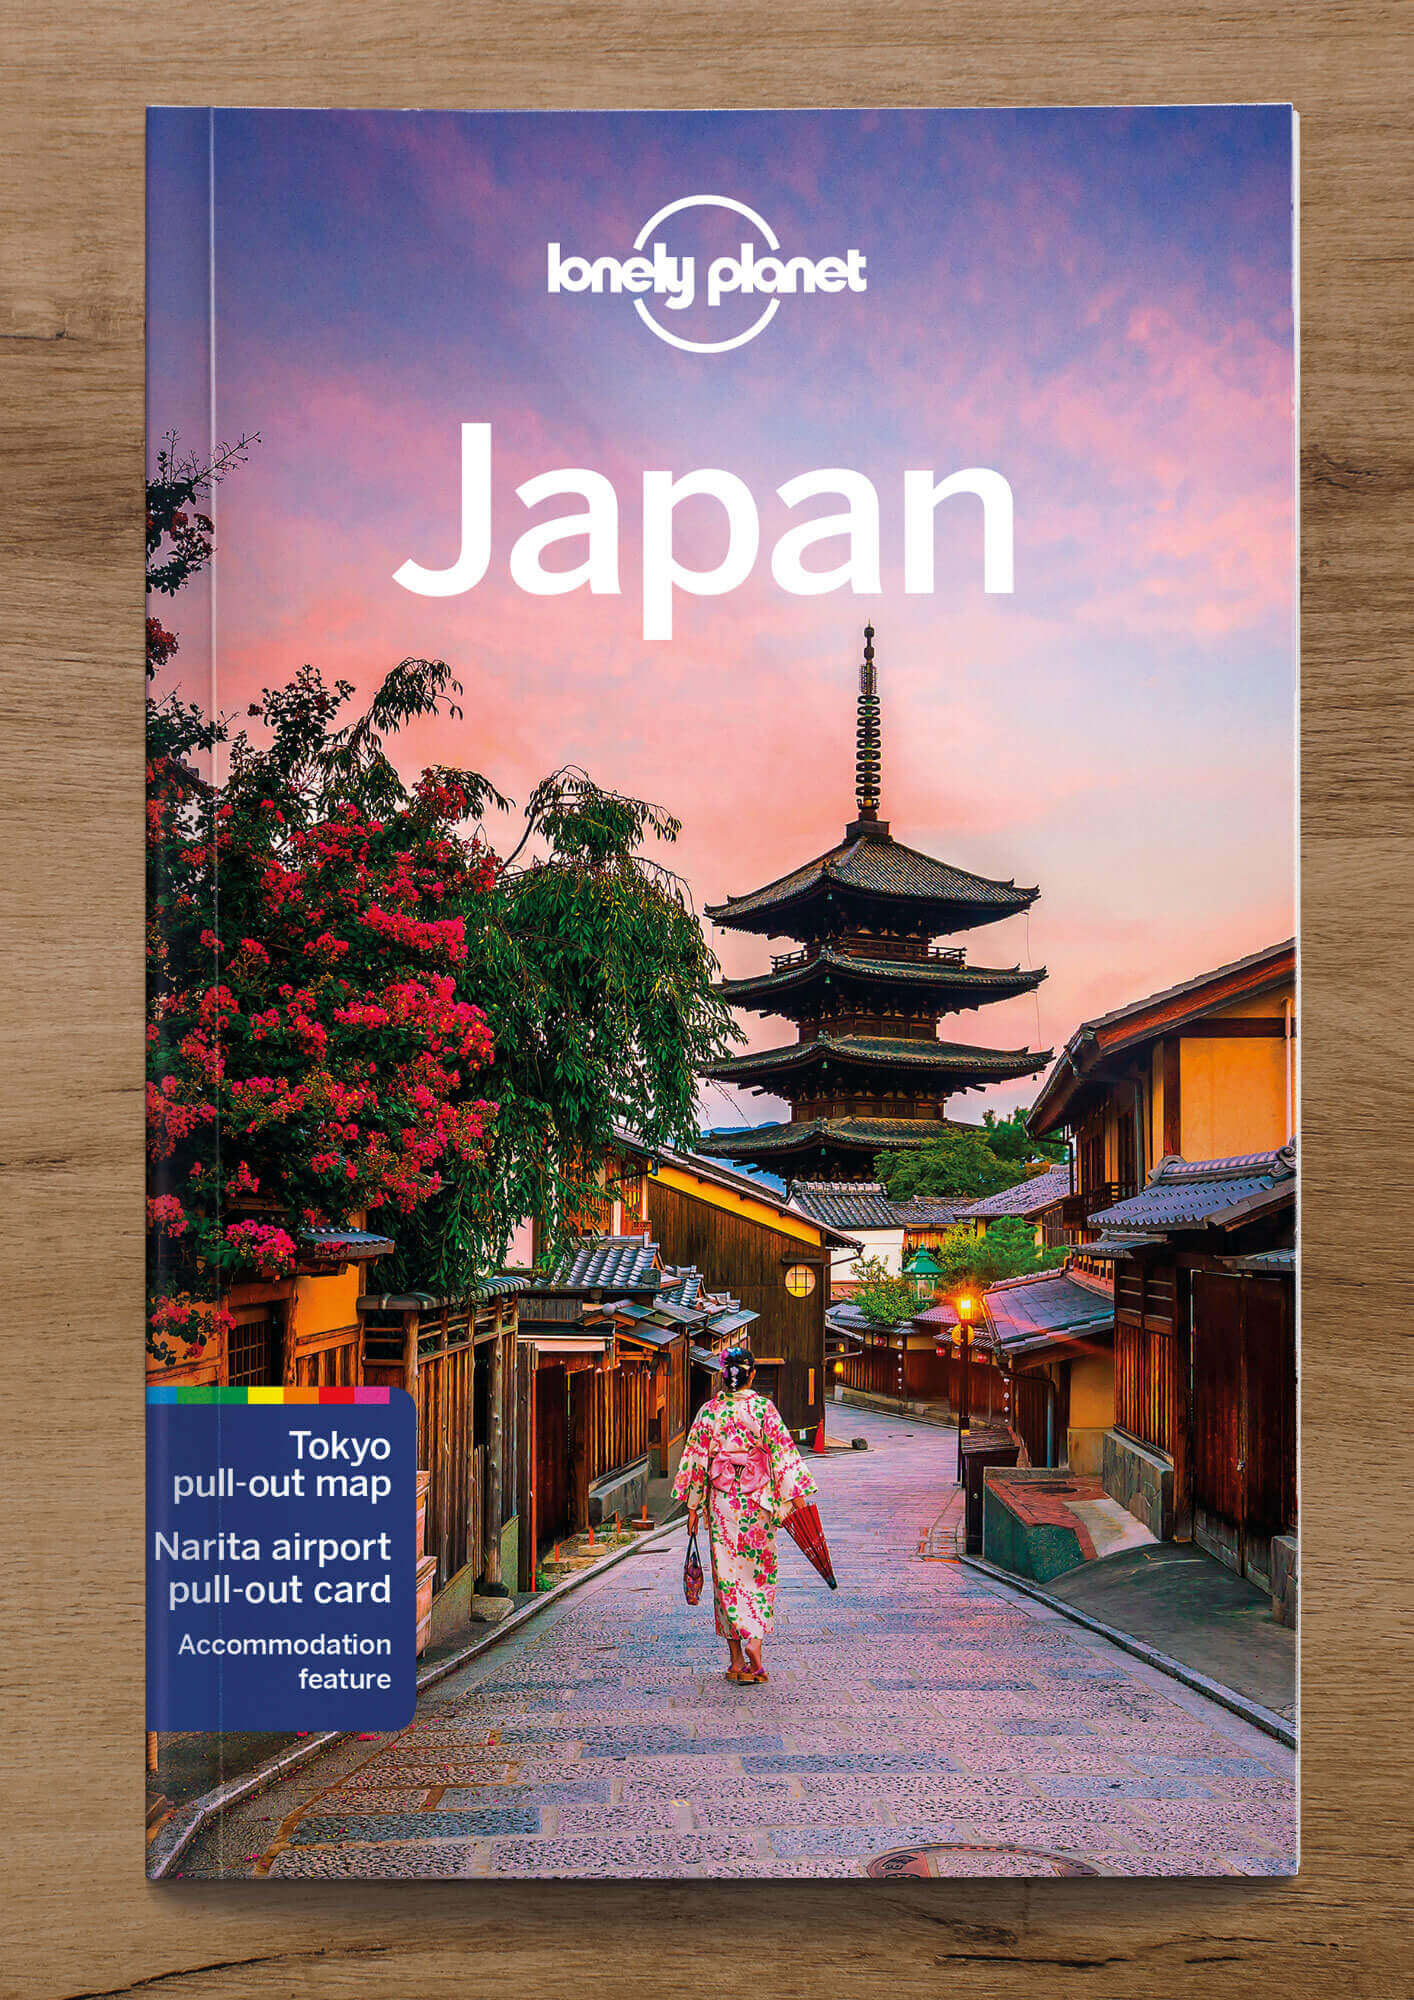  Bestselling Lonelyplanet ebook bundle - Japan